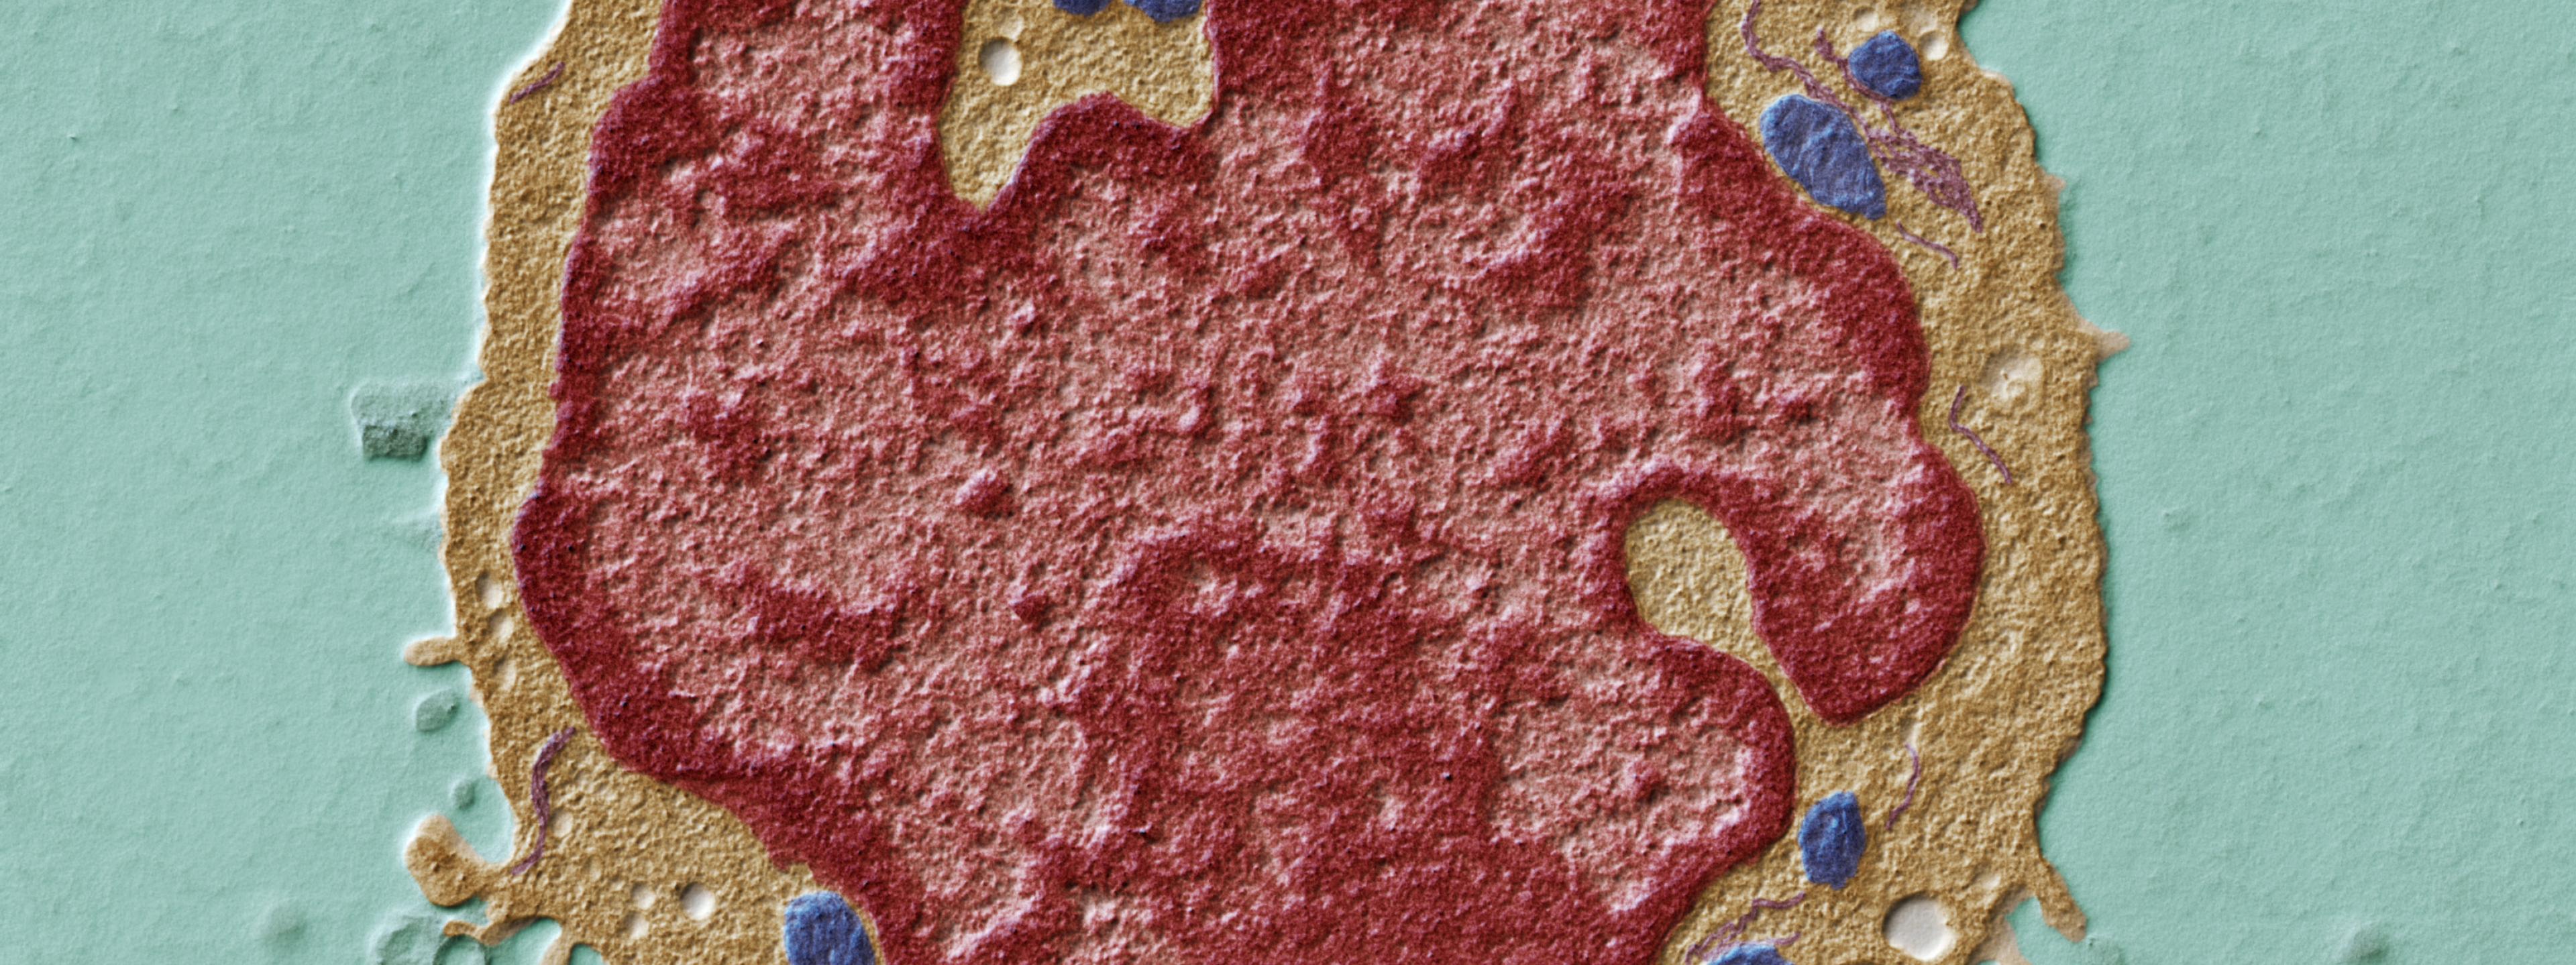 In diesem Ultradünnschnitt durch einen Lymphozyten sind deutlich die Zellbestandteile zu erkennen.
Die MItochondrien sind blau, das endoplasmatische Retikulum violett und der Zellkern rot dargestellt.
Transmissions-Elektronenmikroskop, Vergrösserung   5000:1  (bei 15×12cm Bildgrösse)